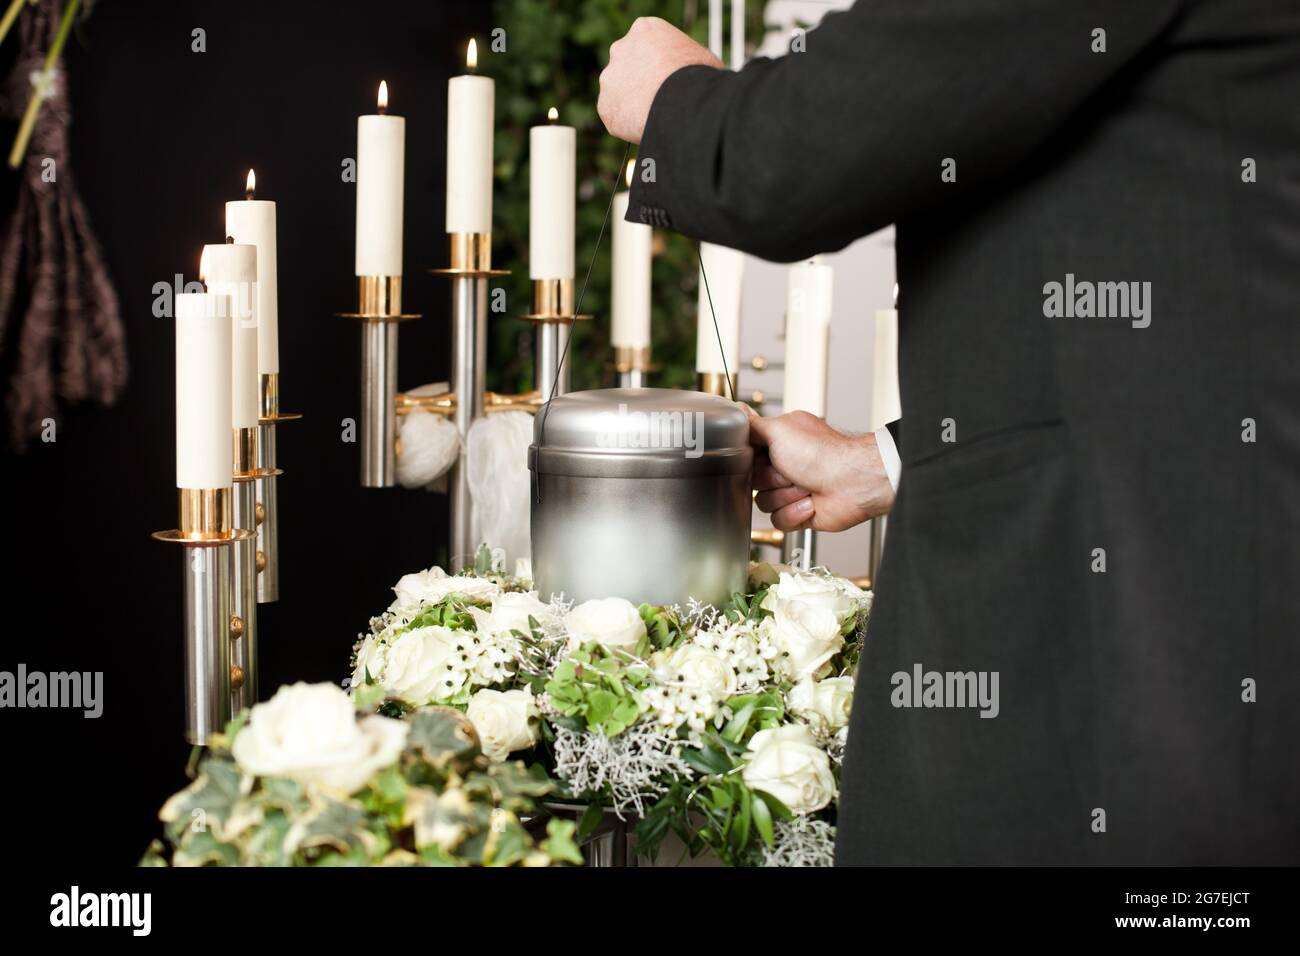 La religion, la mort et dolor - croque sur l'urne funéraire Photo Stock -  Alamy